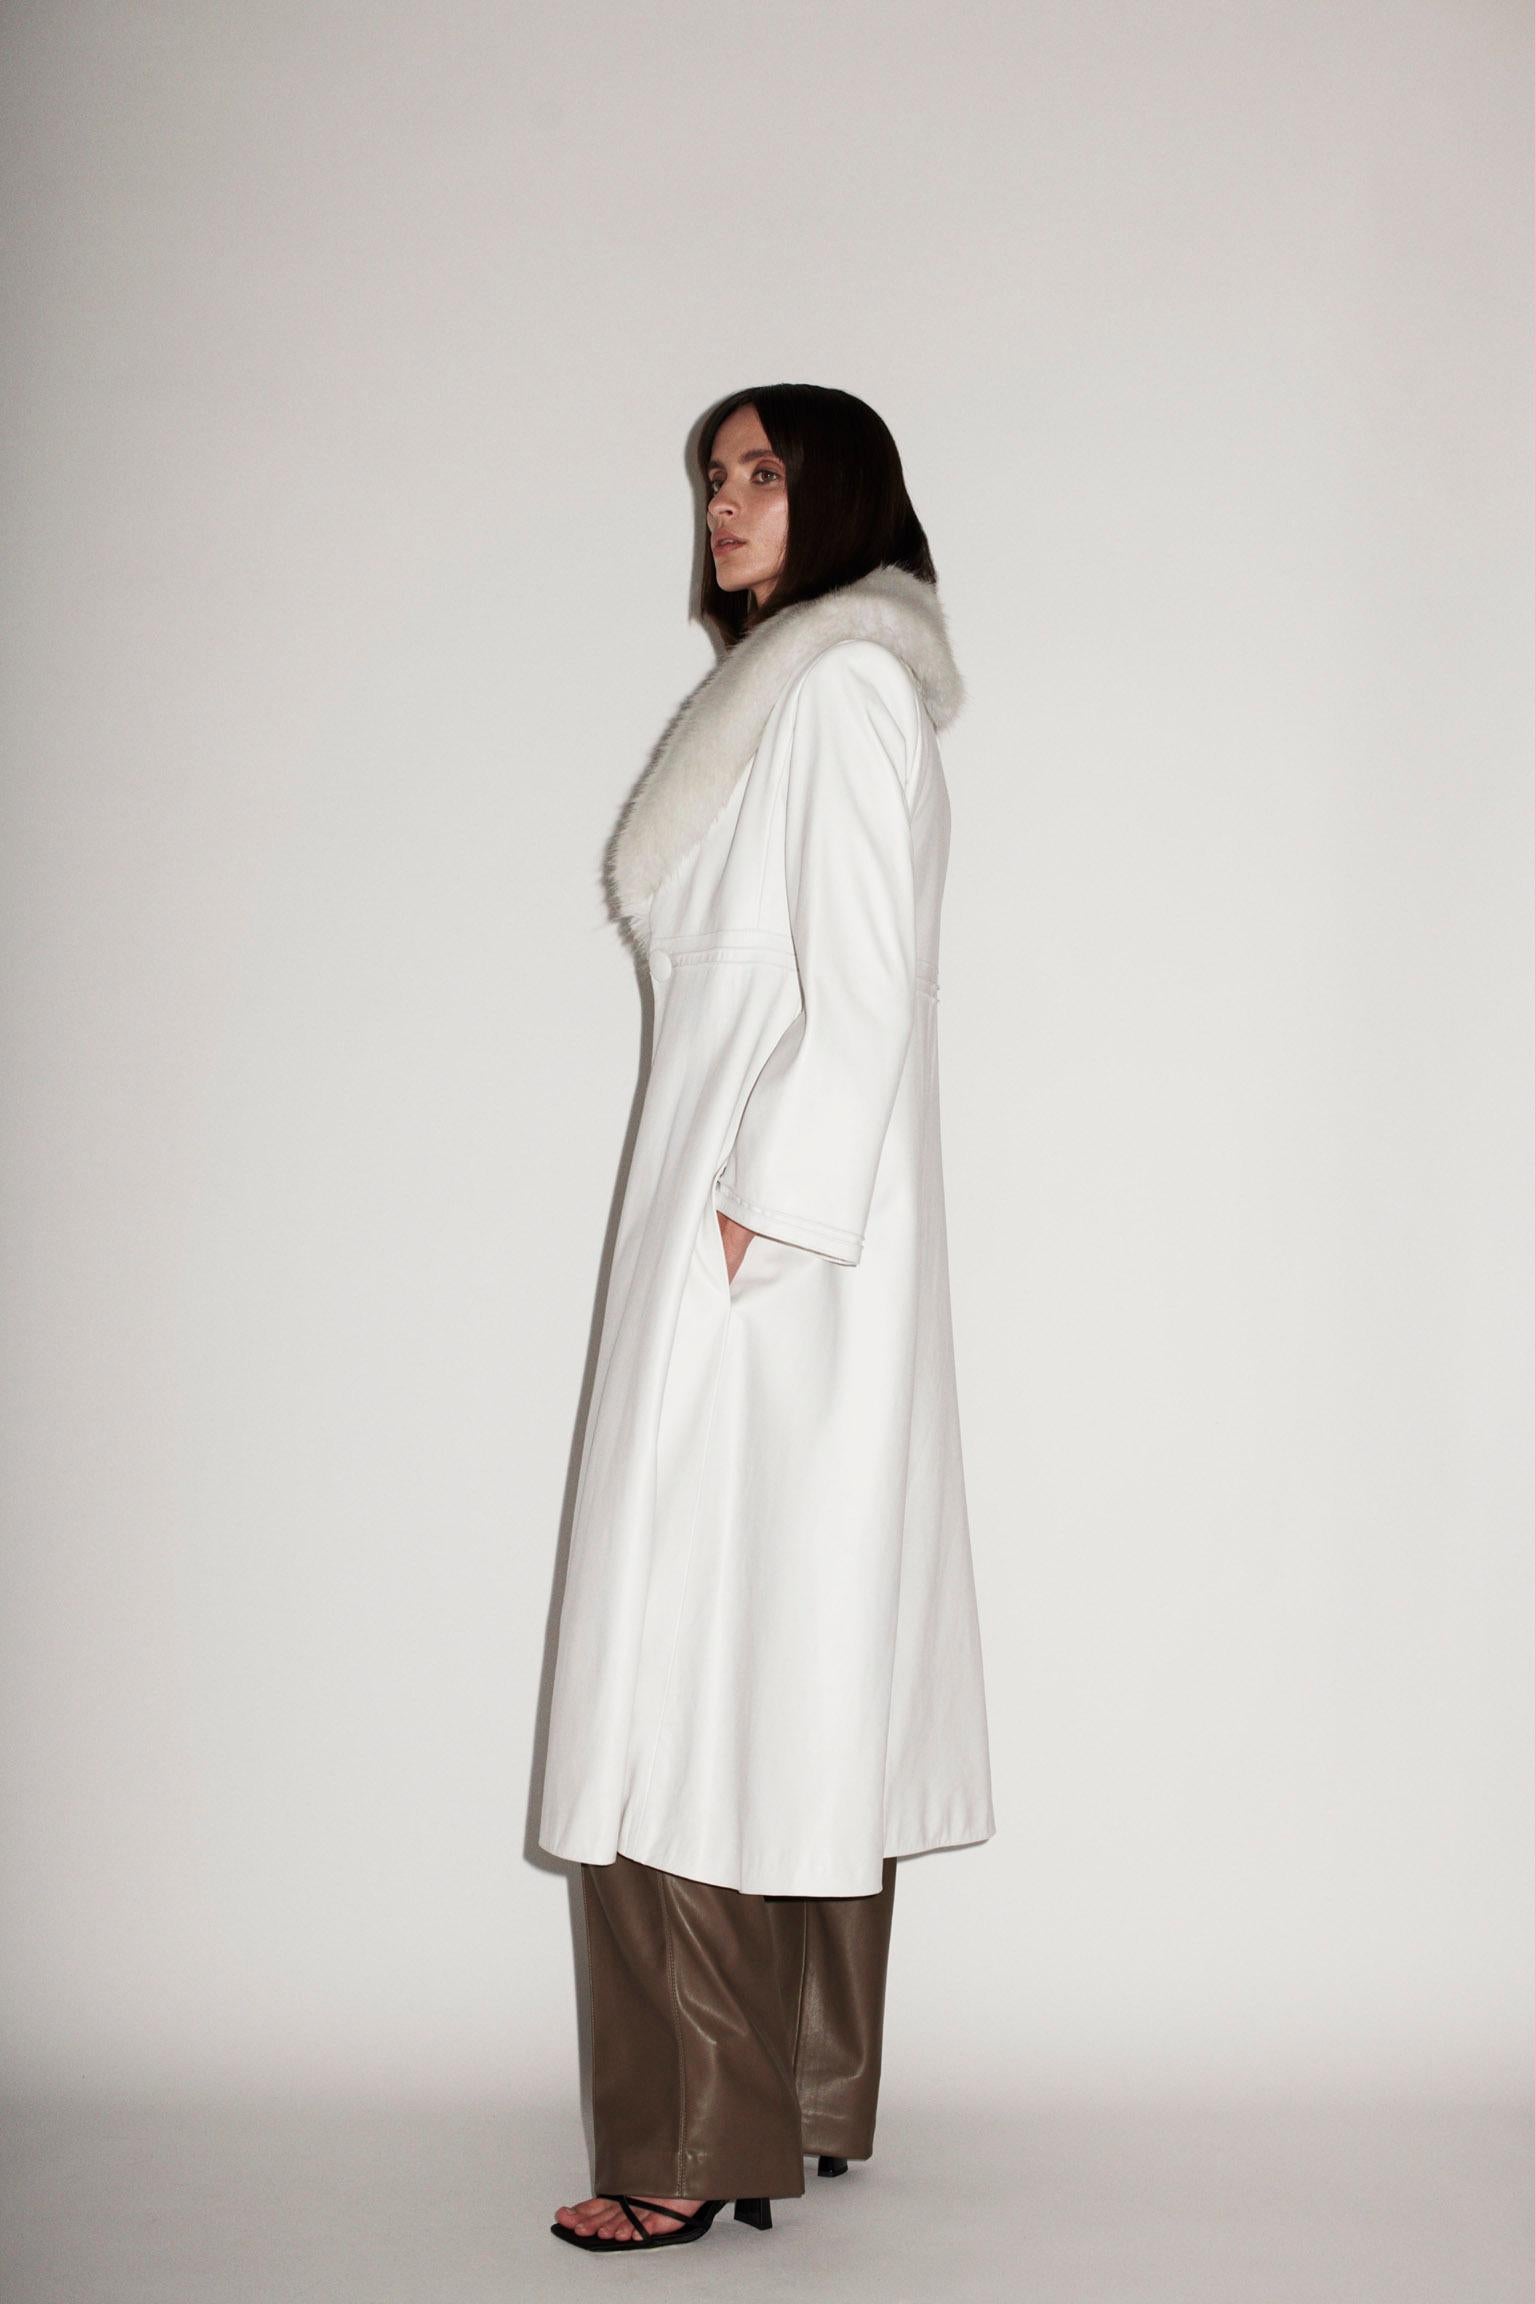 Women's Verheyen London Edward Leather Coat in White with Faux Fur - Size uk 8  For Sale